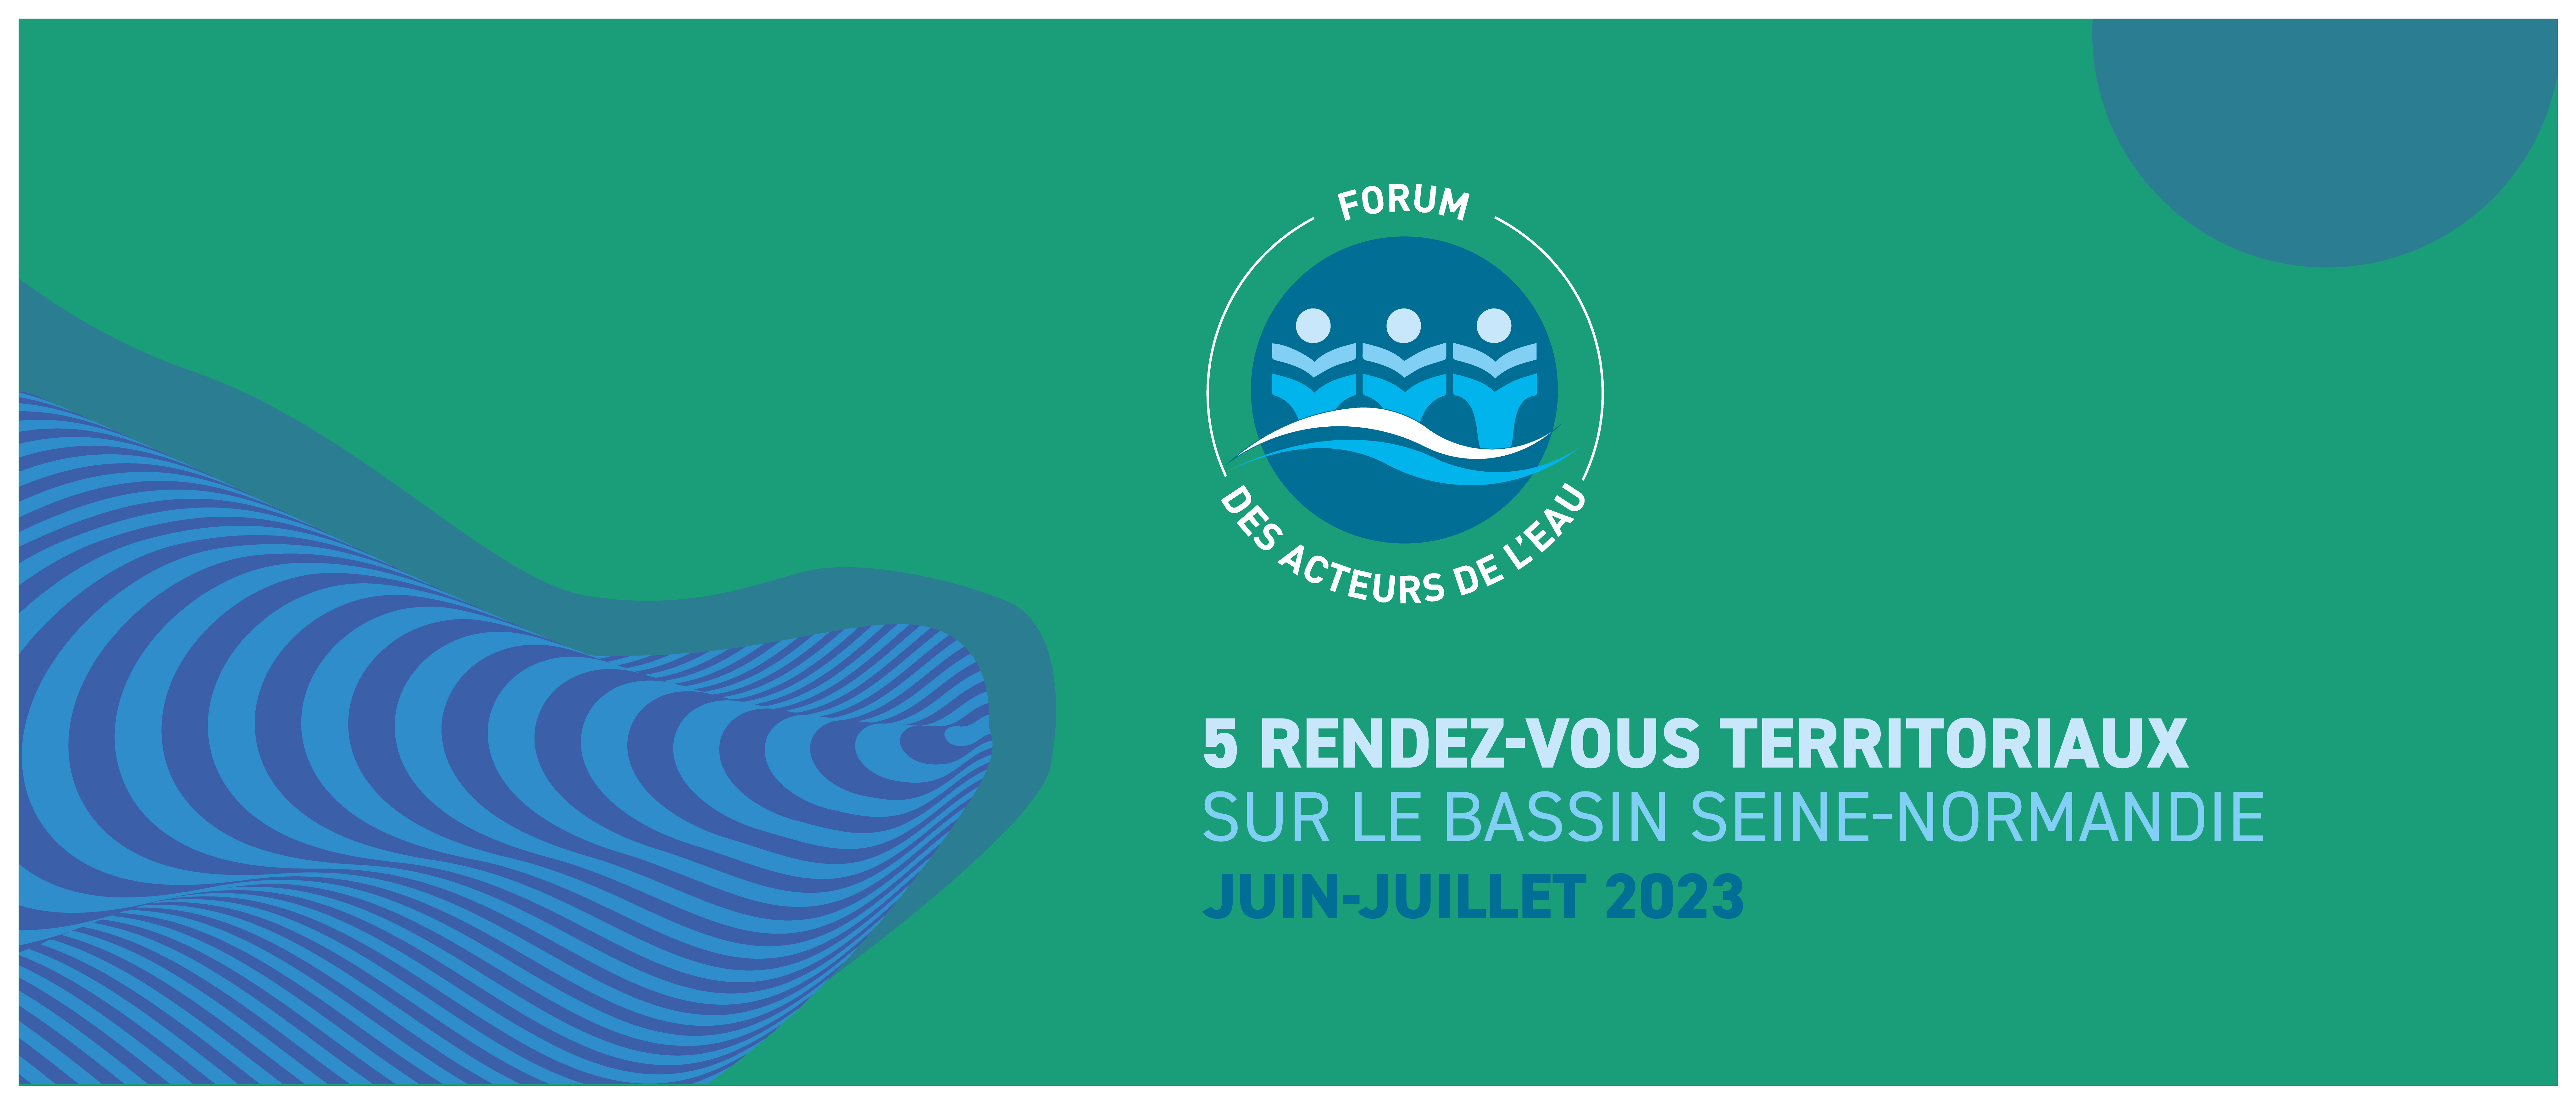 vignette bleue et verte avec logo du forum des acteurs de l'eau 